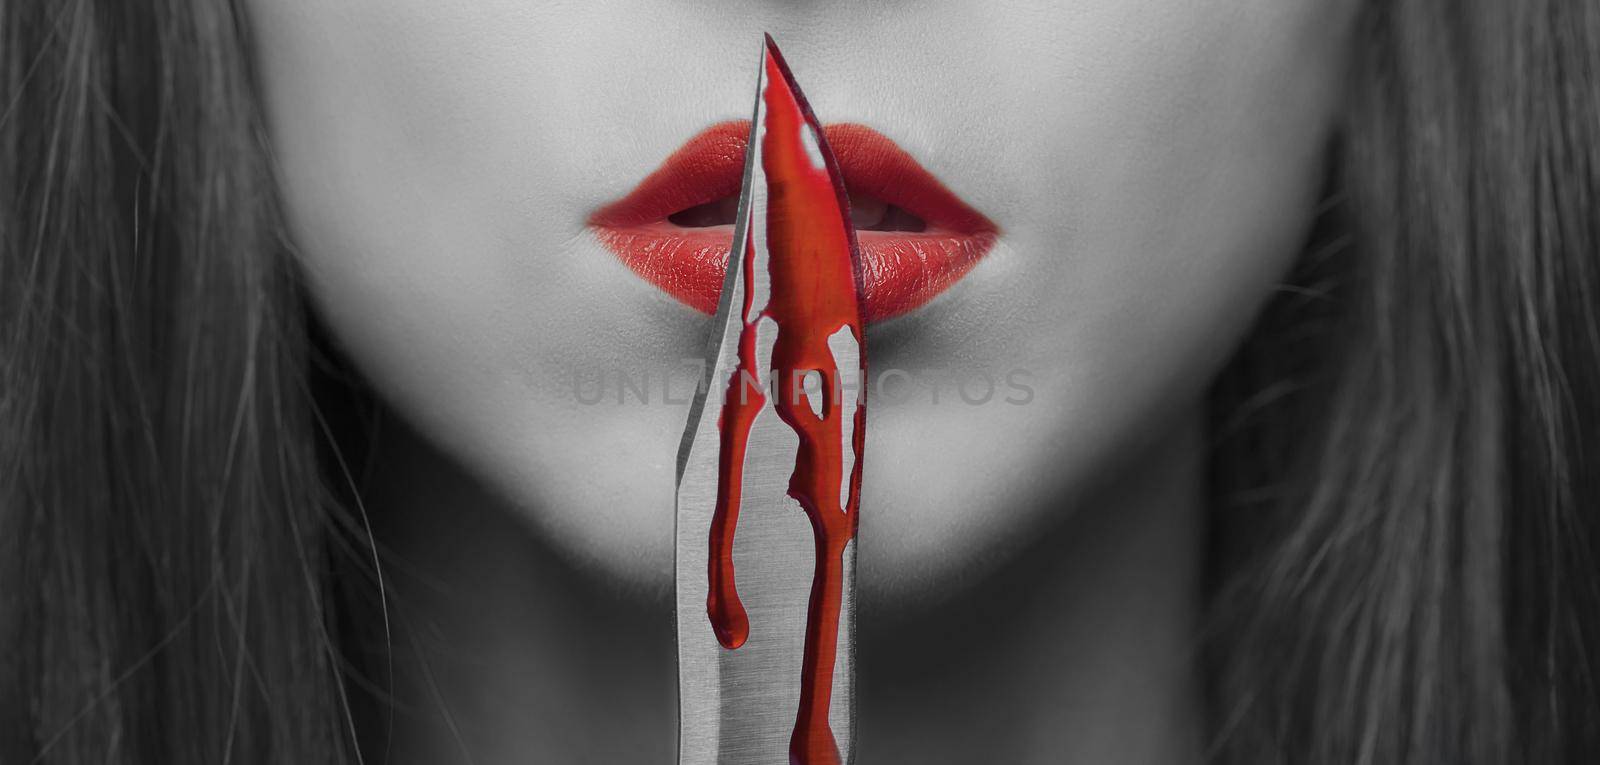 Dangerous woman with knife in blood by alexAleksei